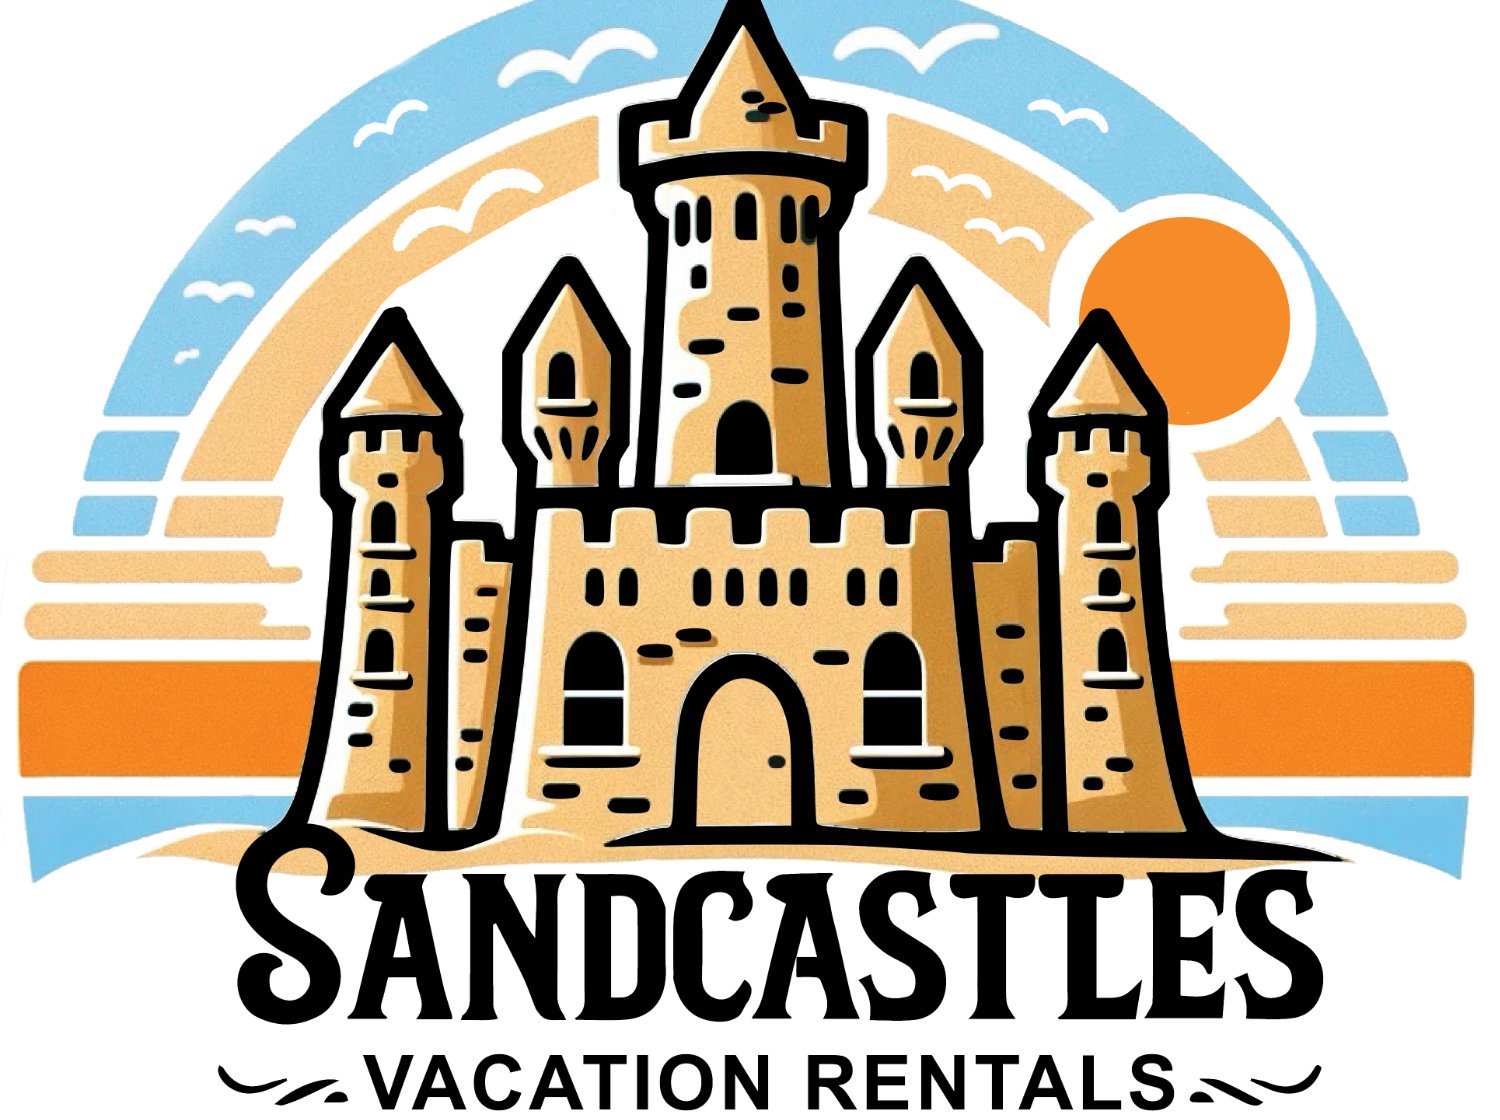 Sandcastles Vacation Rentals